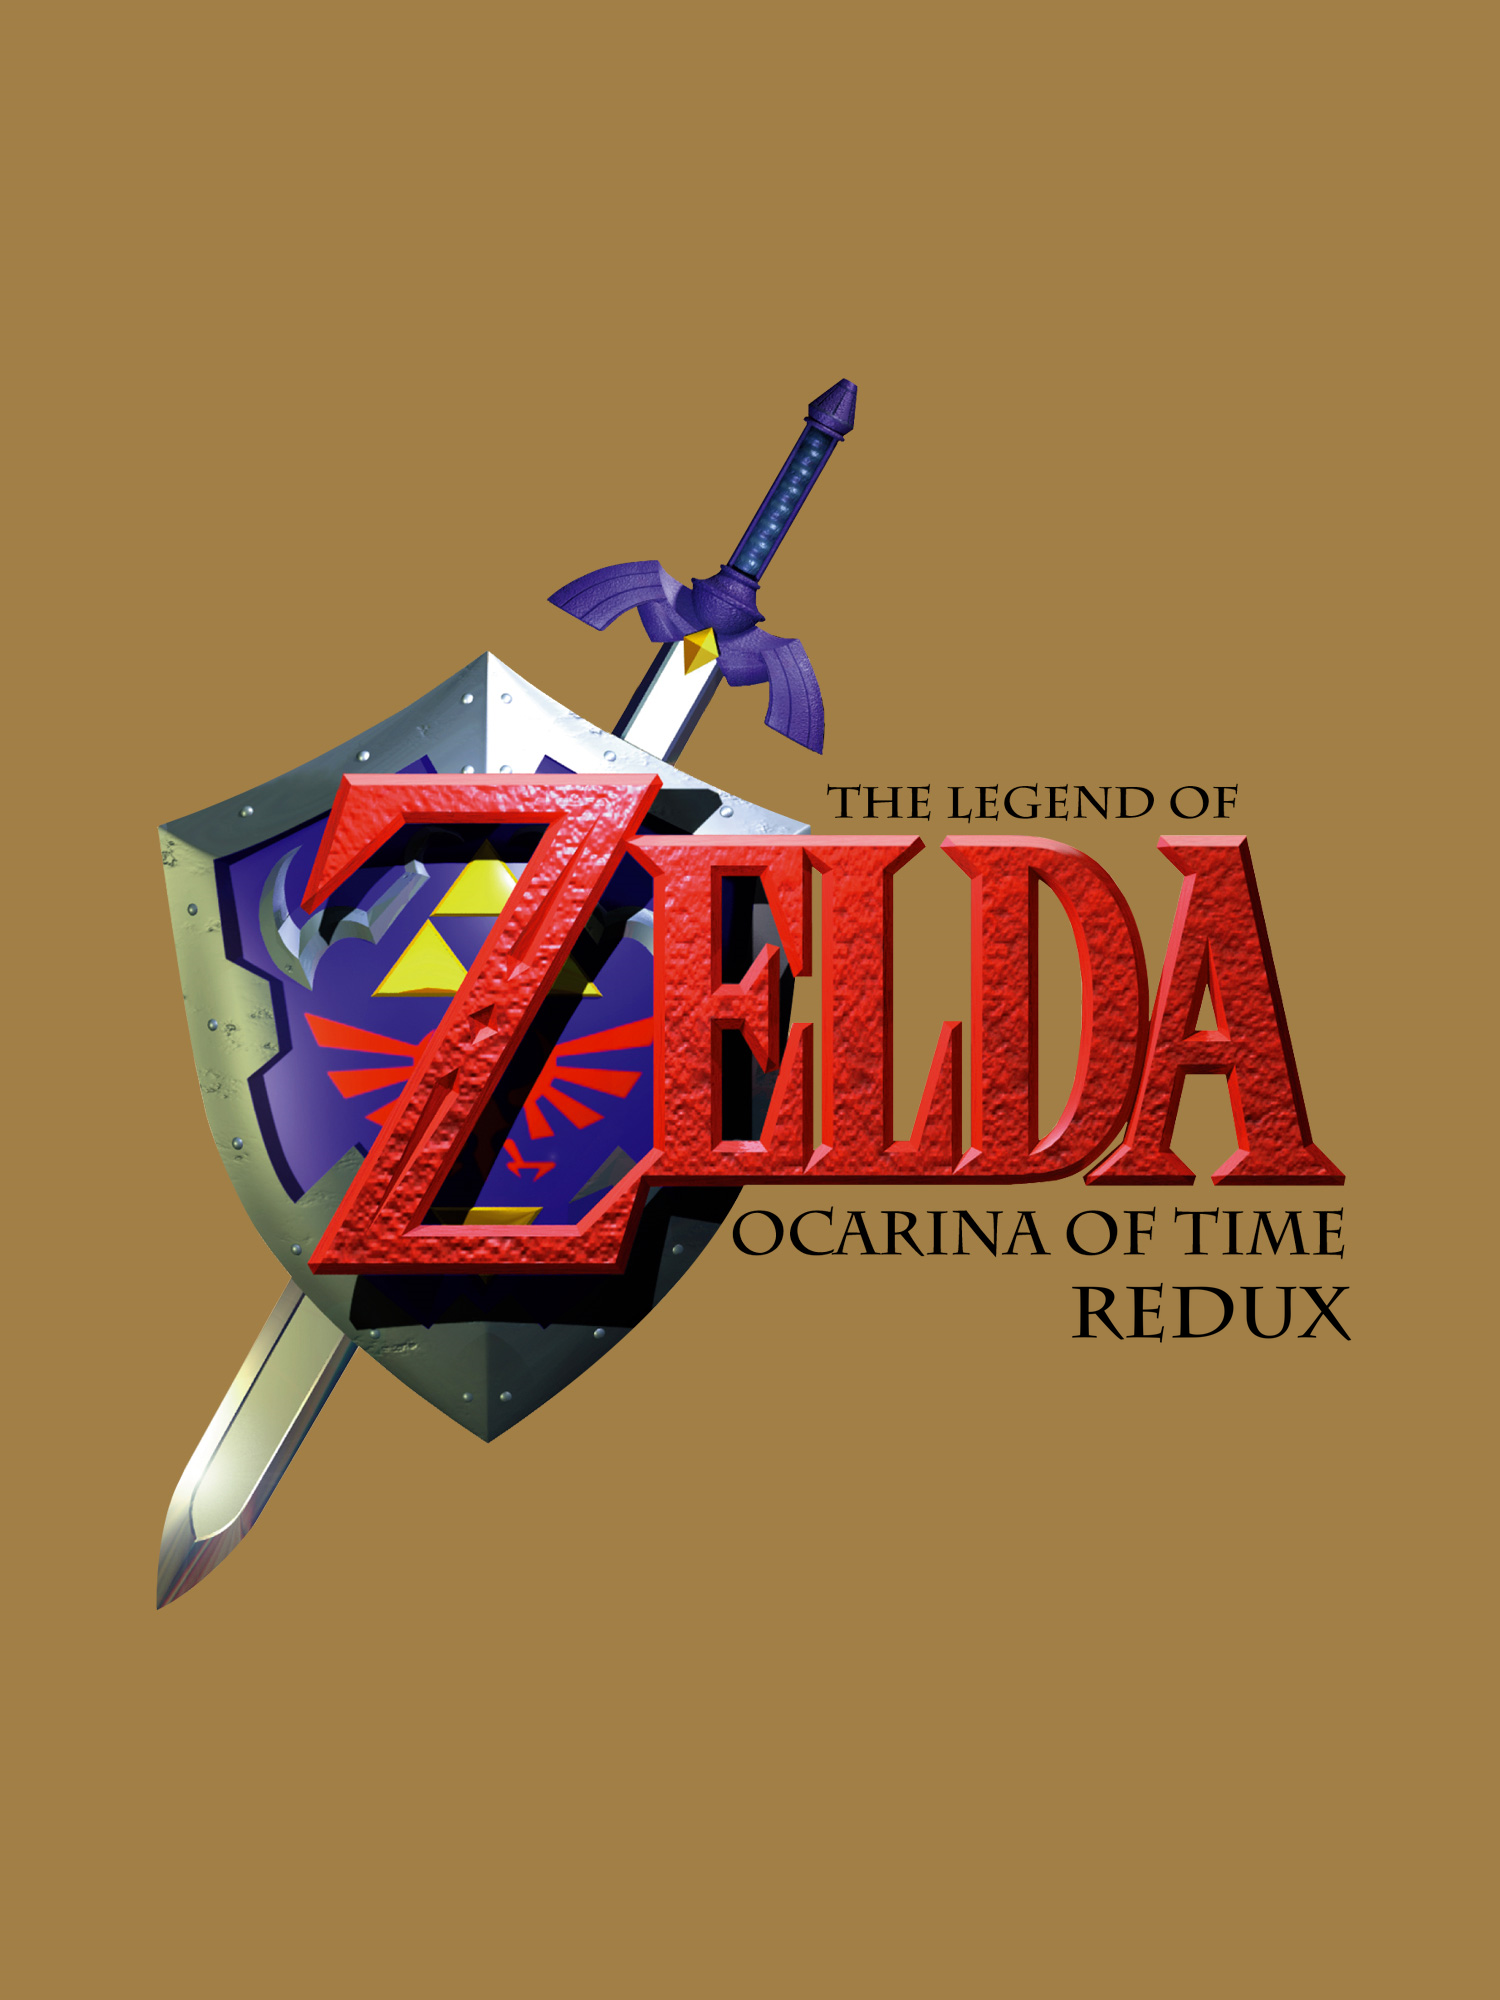  Hacks - The Legend of Zelda Redux